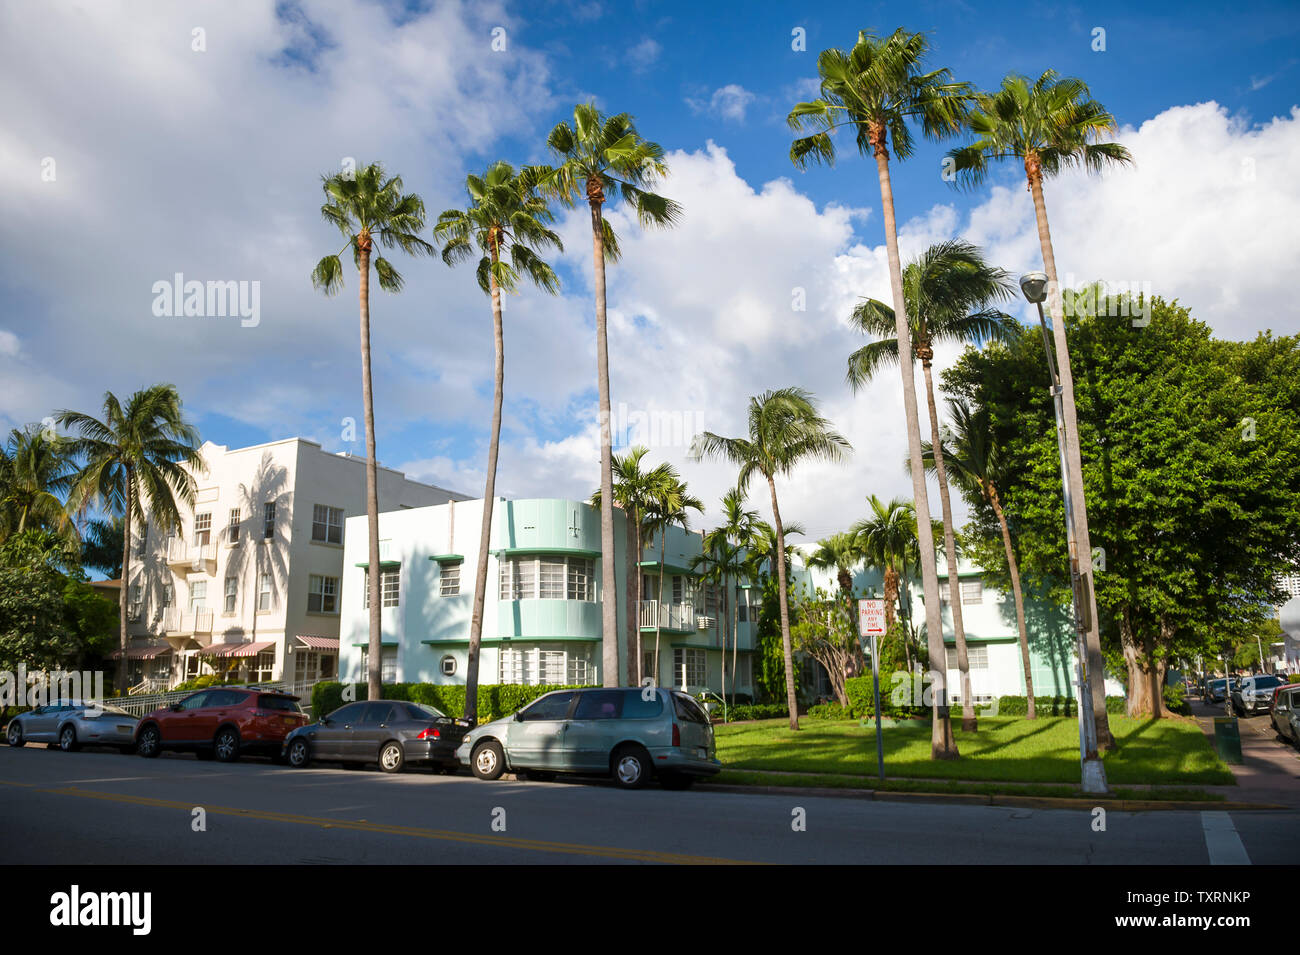 Typischen bunten Art Deco Architektur mit tropischen Palmen liegt in einer ruhigen Wohnstraße in South Beach, Miami, Florida Stockfoto